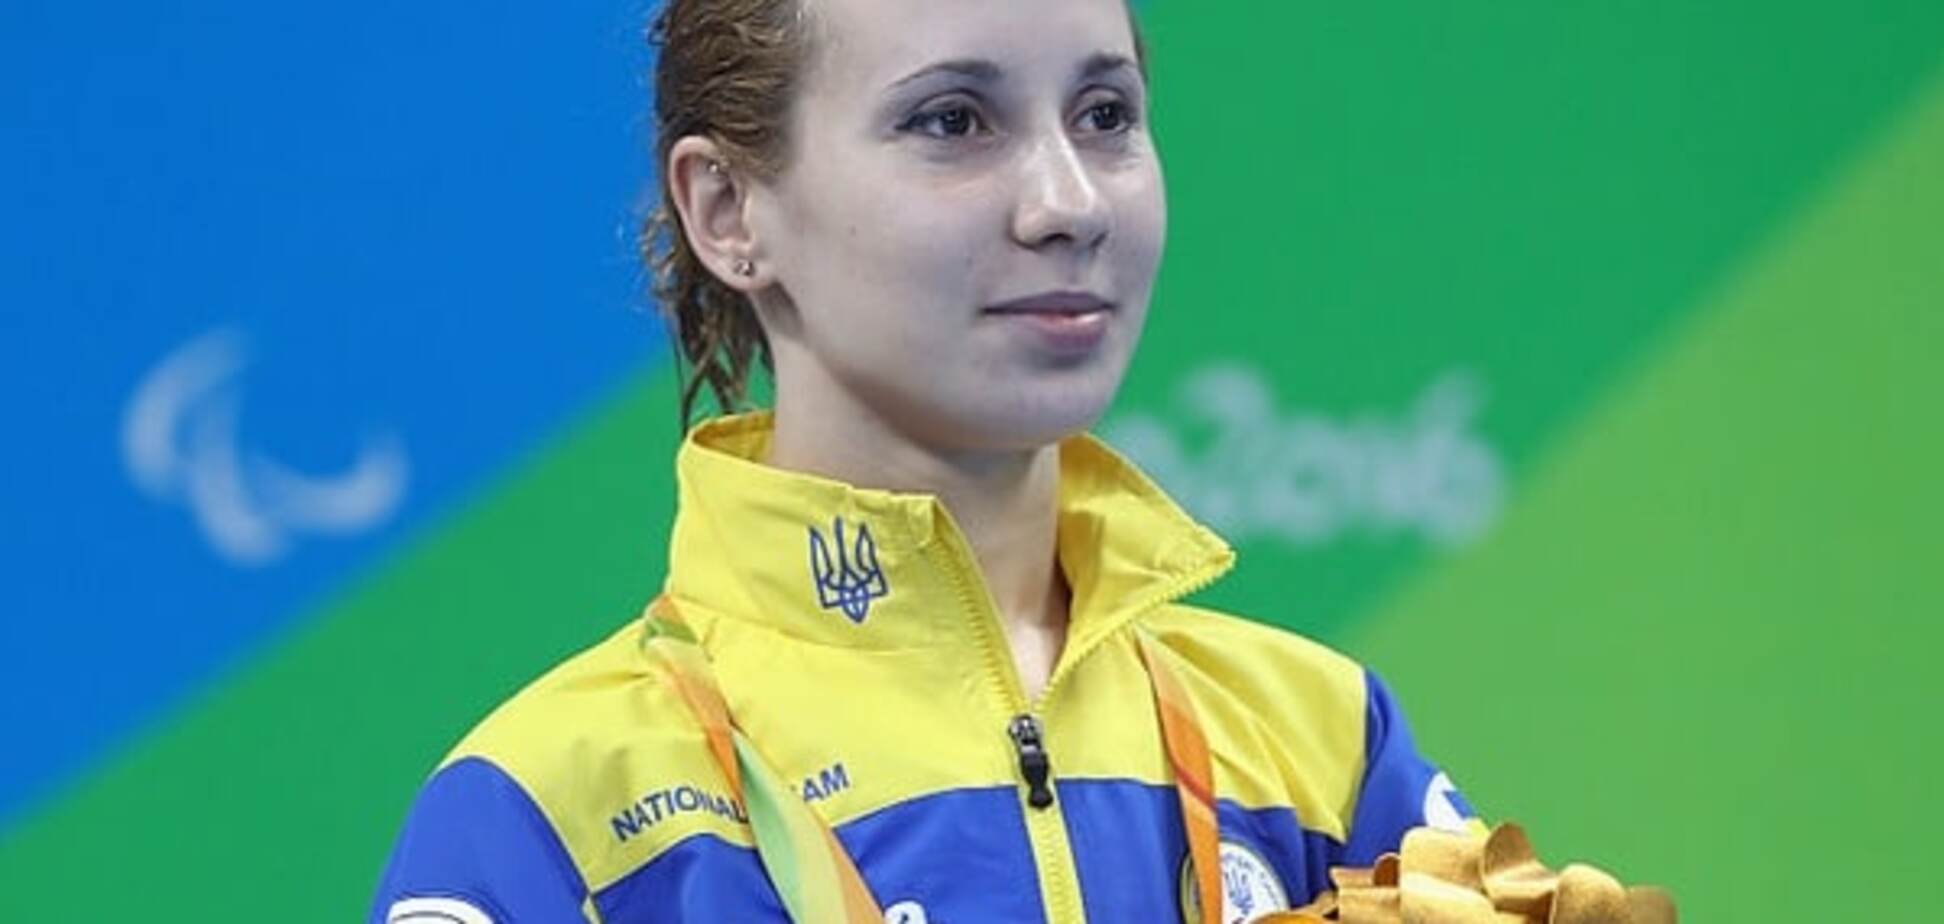 Украина вошла в топ-3 медального зачета Паралимпиады-2016